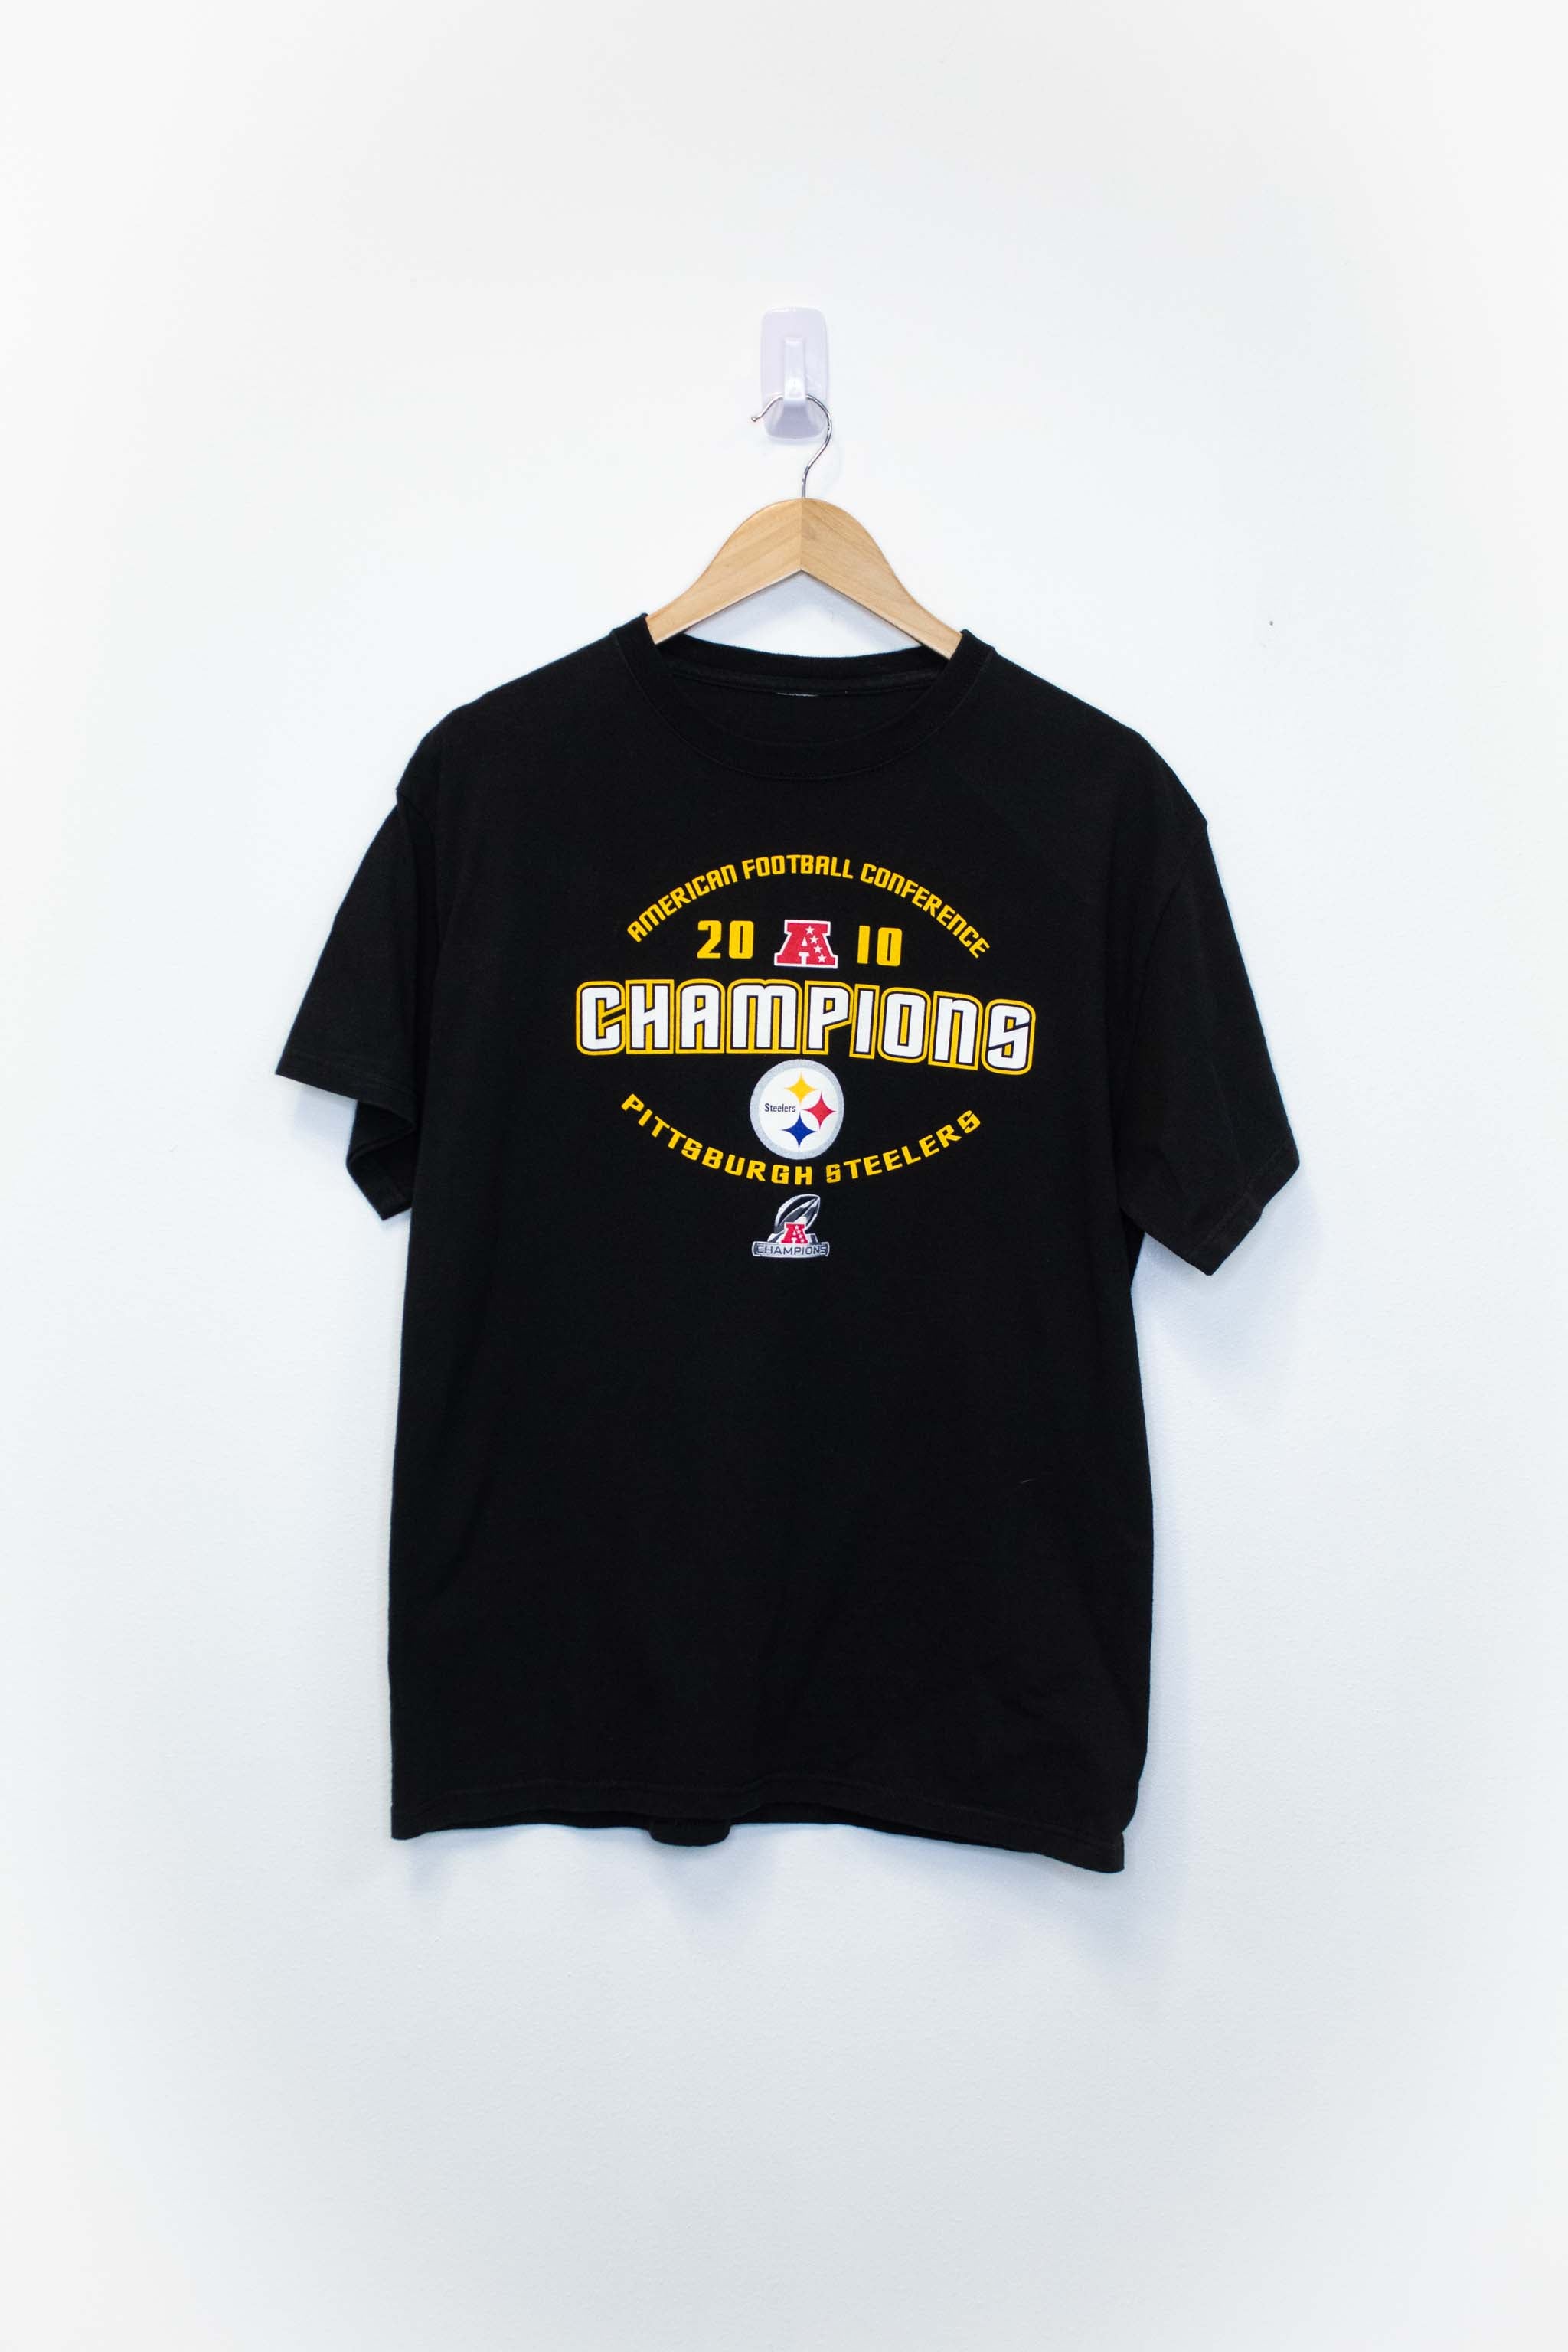 Vintage Pittsburgh Steelers Tee